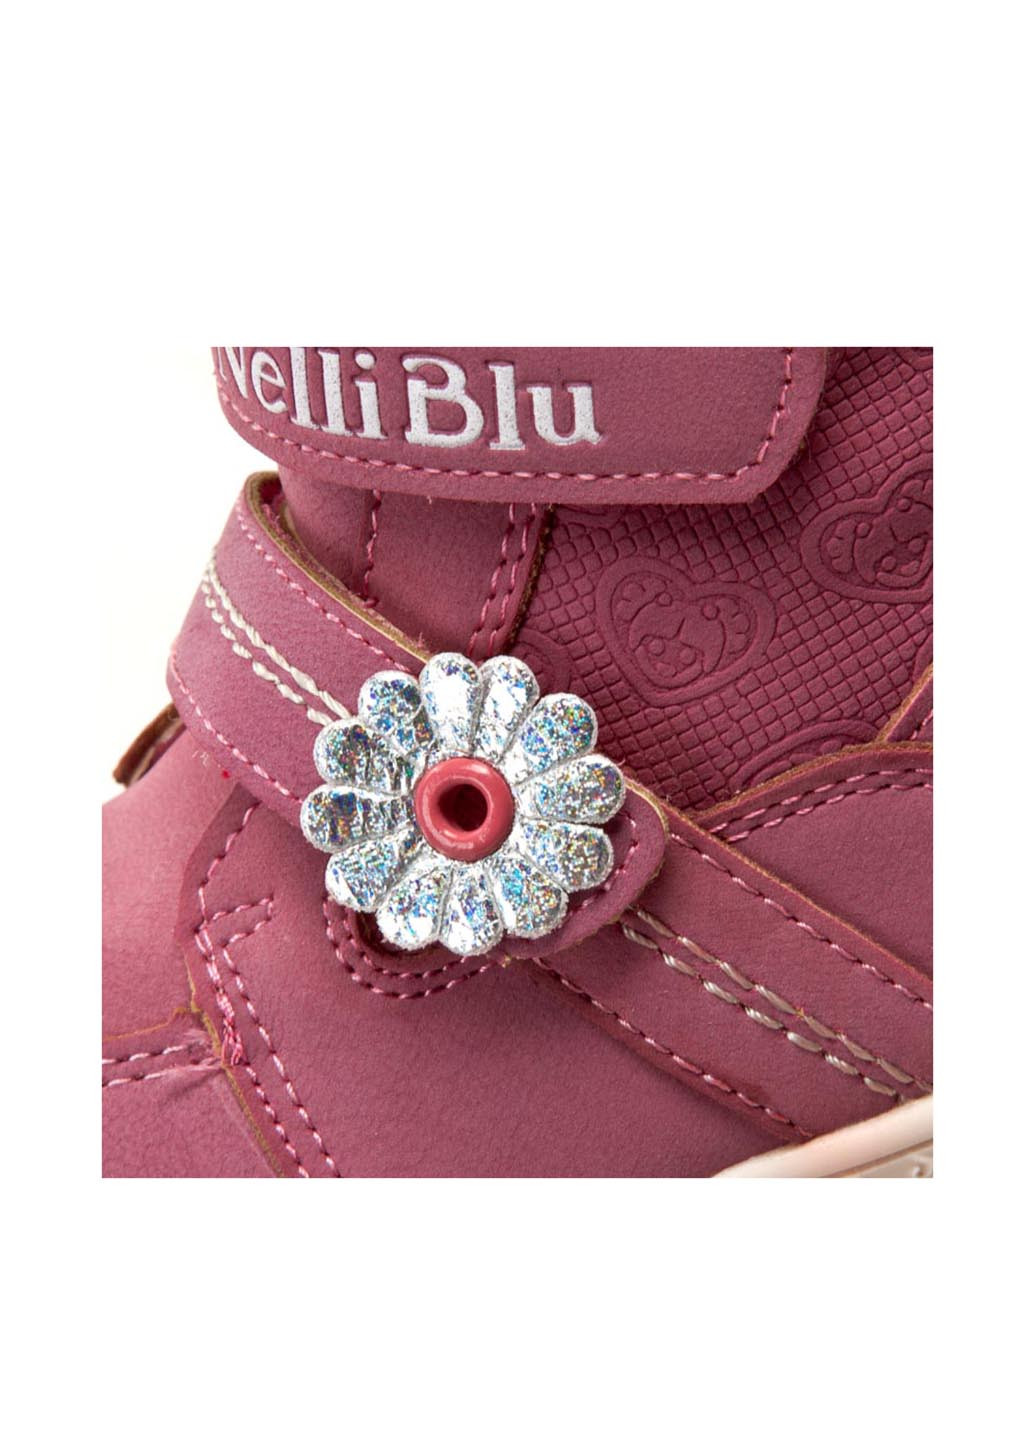 Темно-розовые кэжуал зимние черевики nelli blu cyl030703-2 Nelli Blu